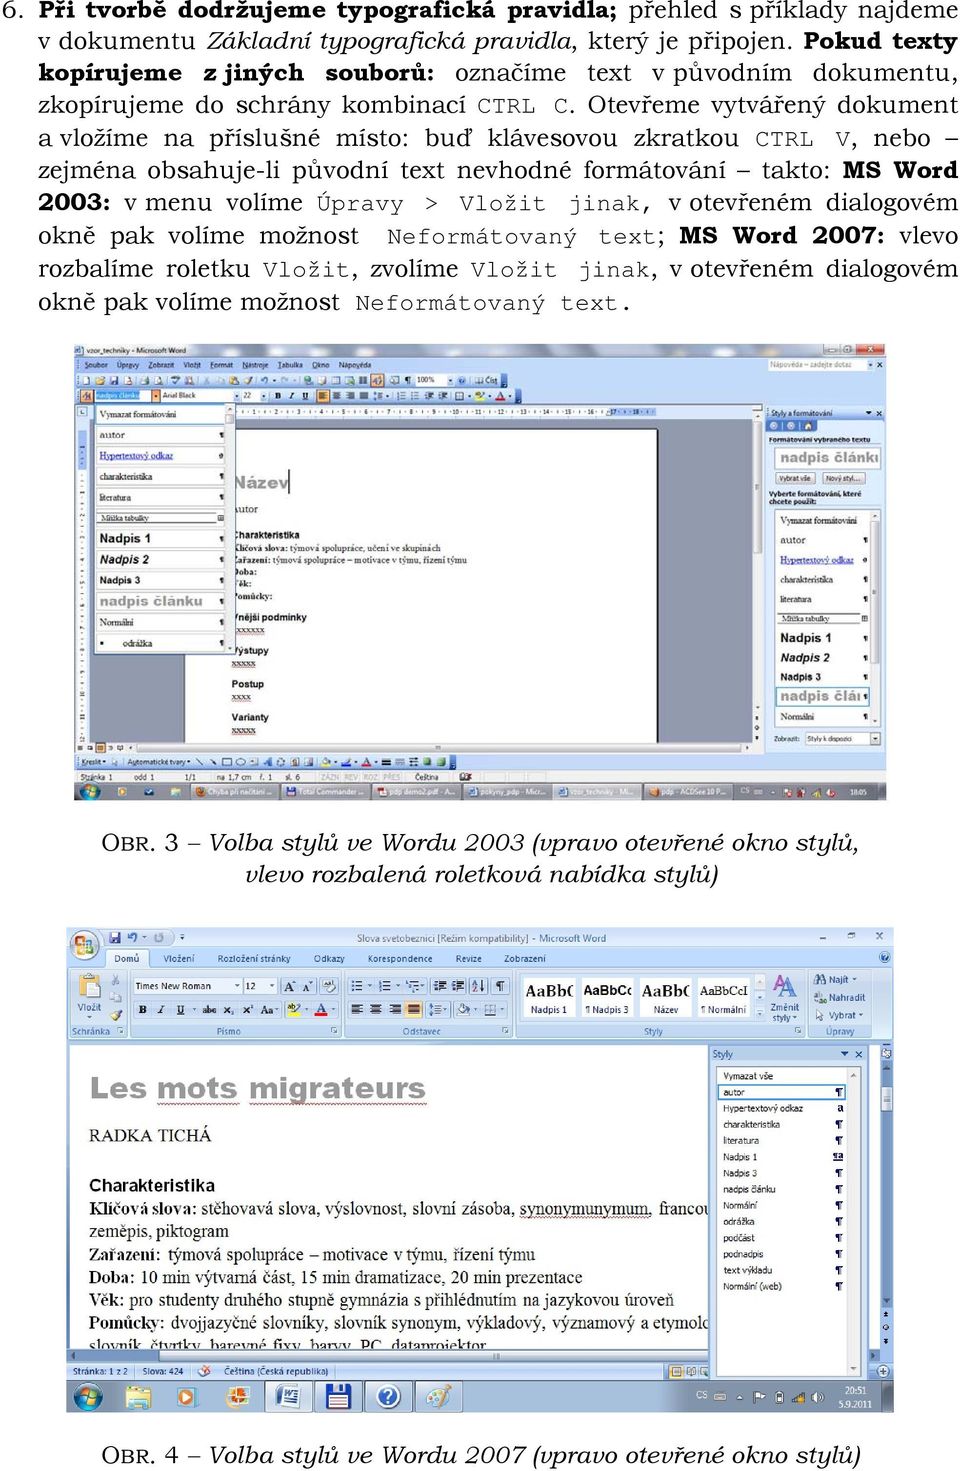 Otevřeme vytvářený dokument a vložíme na příslušné místo: buď klávesovou zkratkou CTRL V, nebo zejména obsahuje-li původní text nevhodné formátování takto: MS Word 2003: v menu volíme Úpravy > Vložit